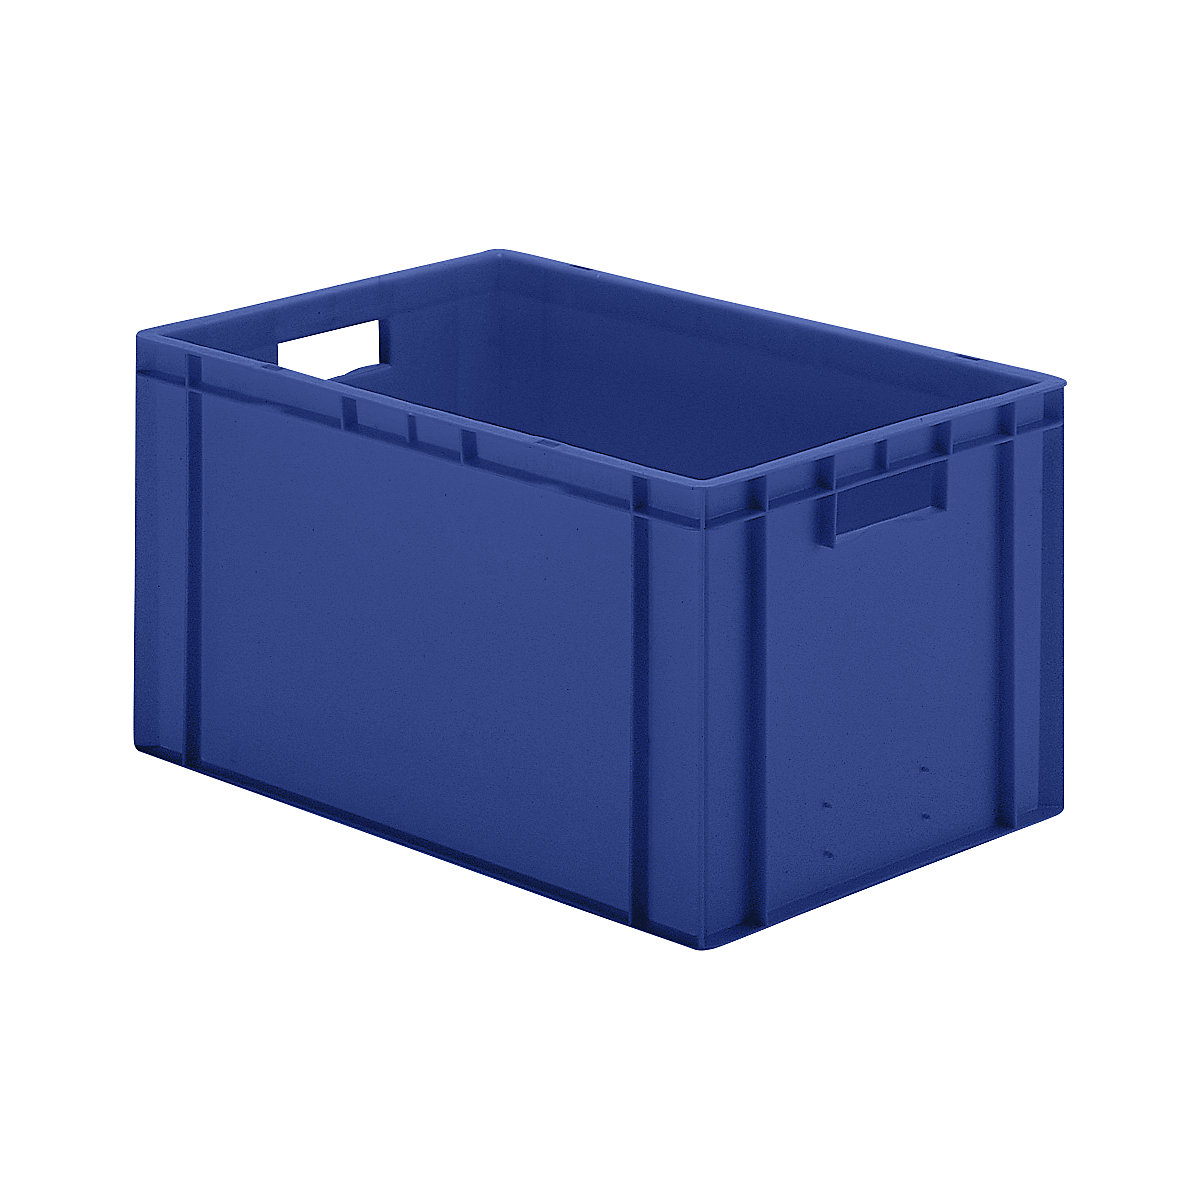 Euro-Format-Stapelbehälter, Wände und Boden geschlossen, LxBxH 600 x 400 x 320 mm, blau, VE 5 Stk